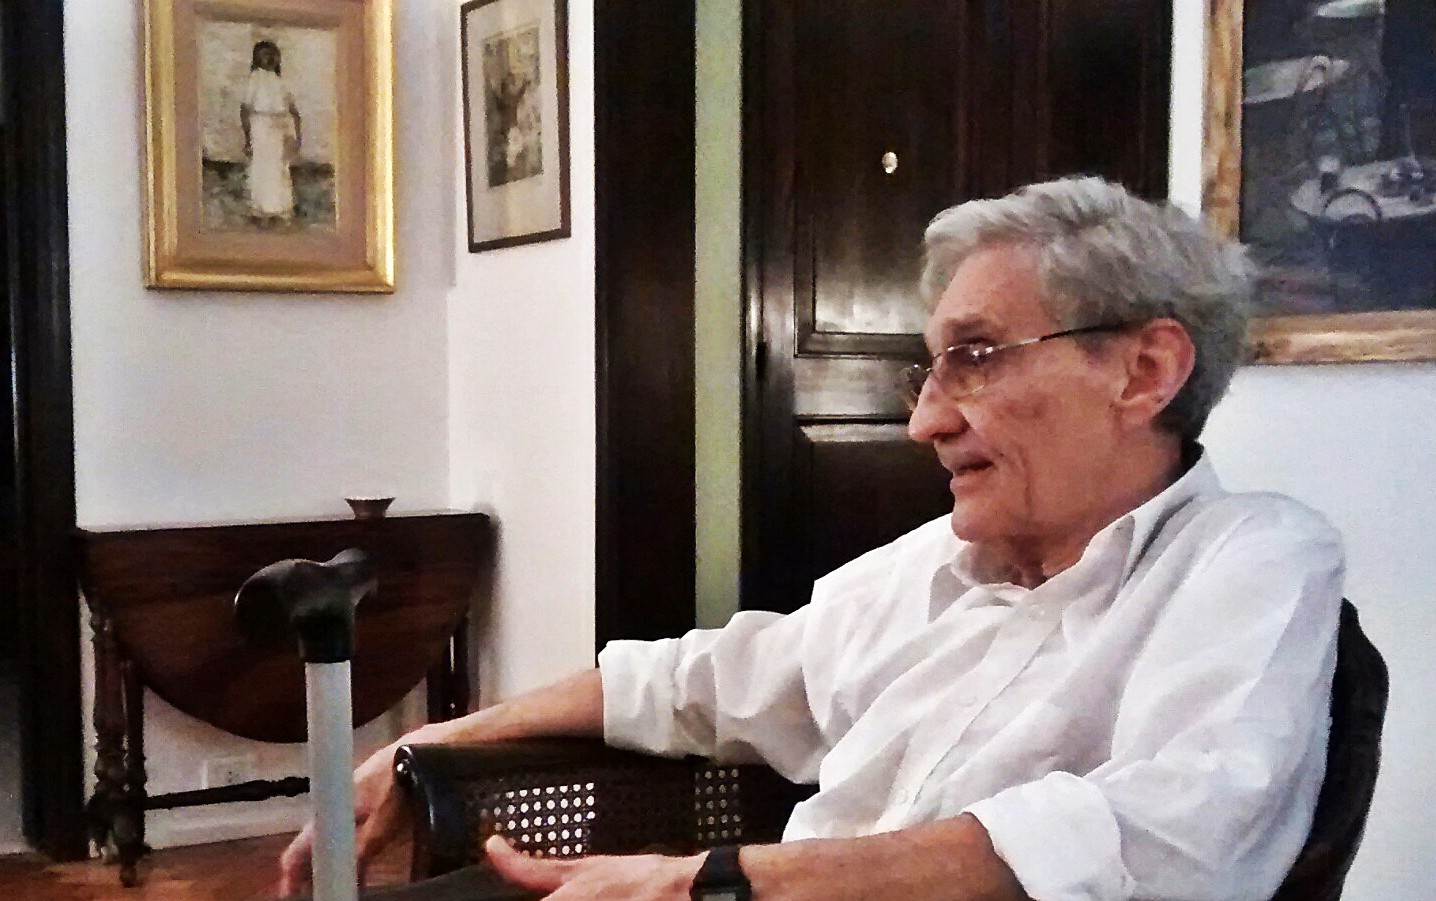 Miércoles 20 de mayo de 2015, Buenos Aires. Domicilio particular de José Giménez Rébora, Barrio de Belgrano.